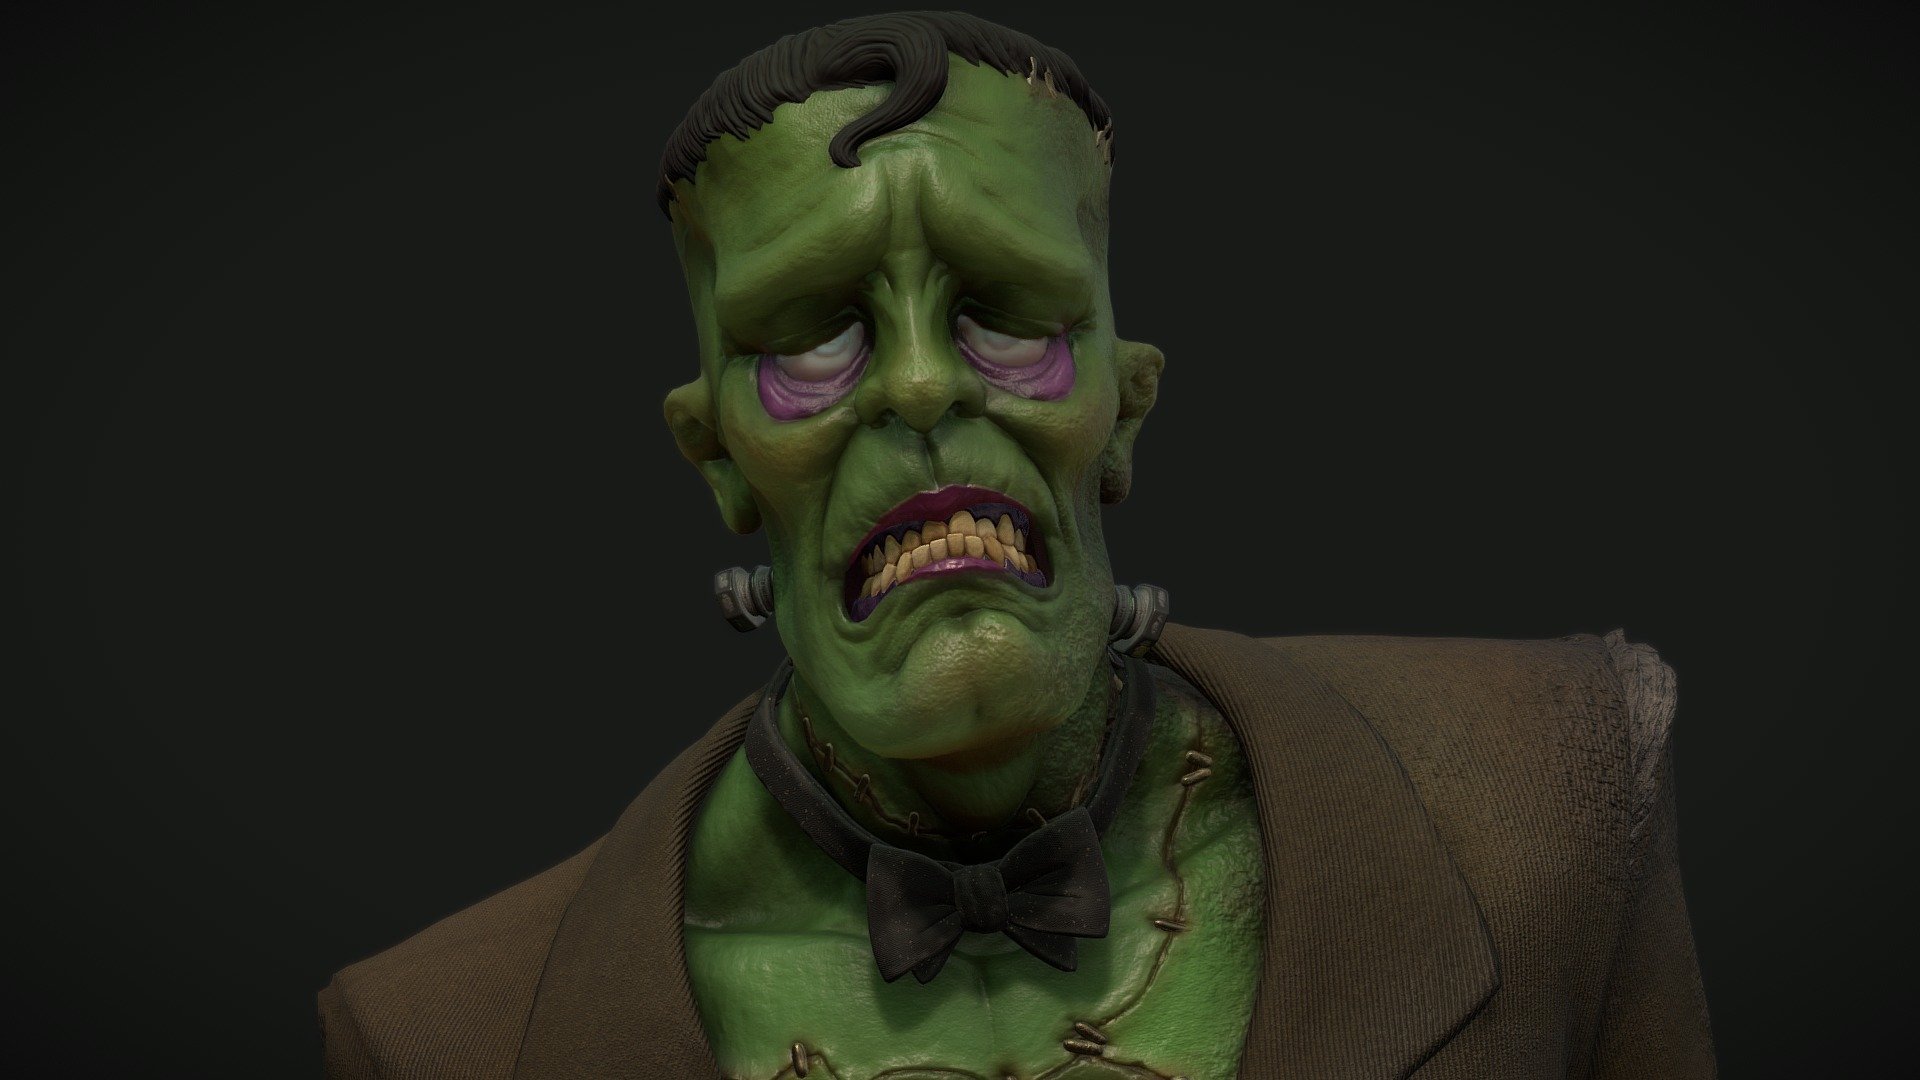 Monter
https://www.artstation.com/nwilly - The Monster - 3D model by Nwilly_art 3d model